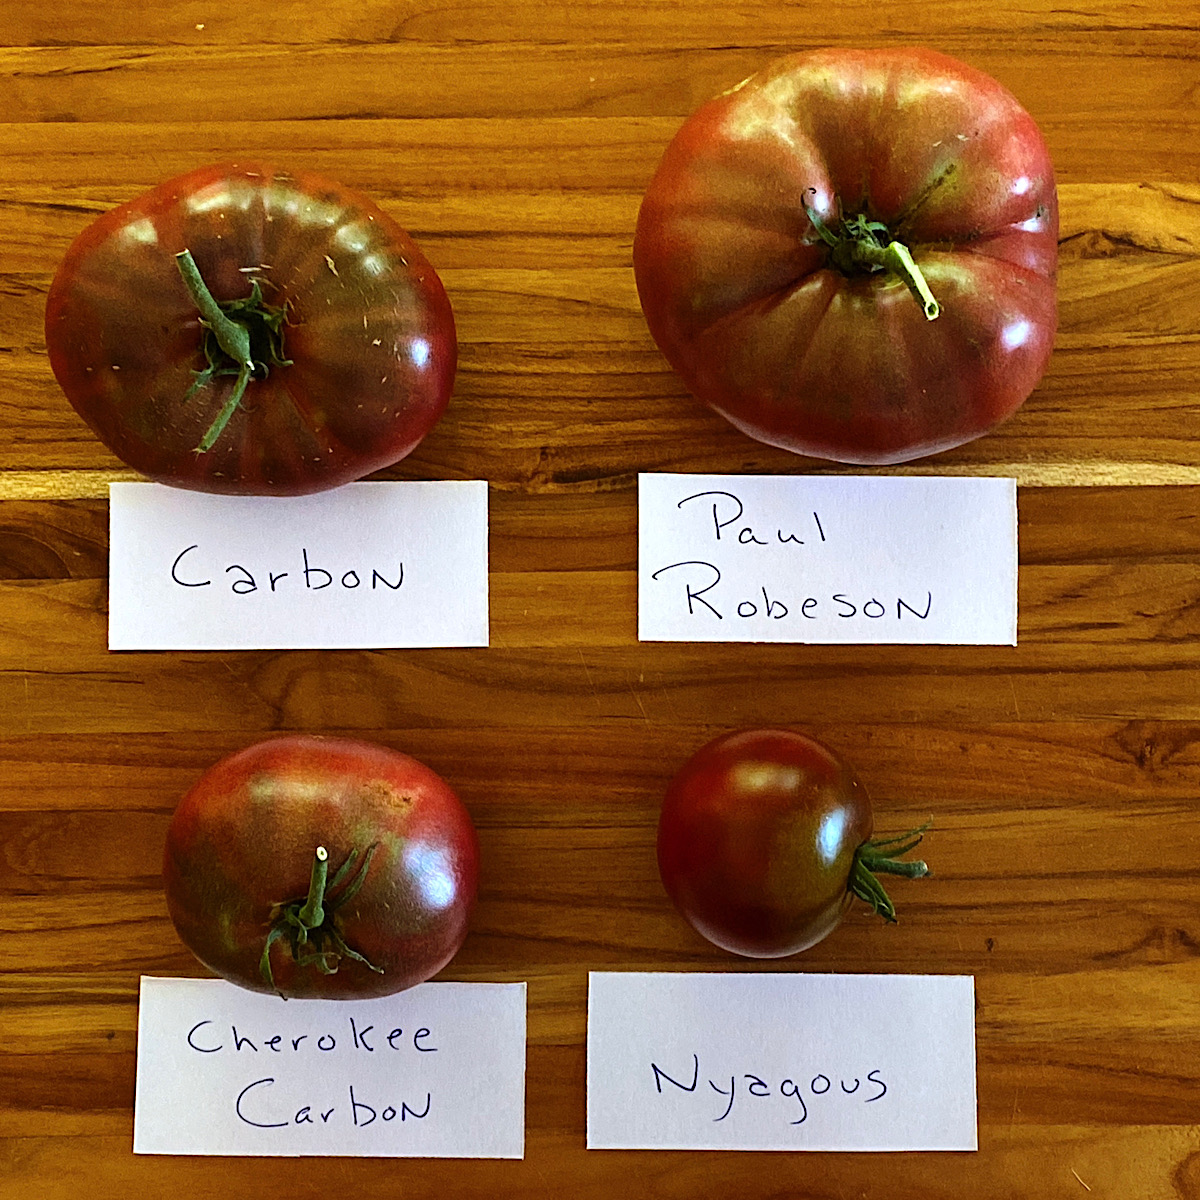 Four varieties of “black” heirloom tomatoes